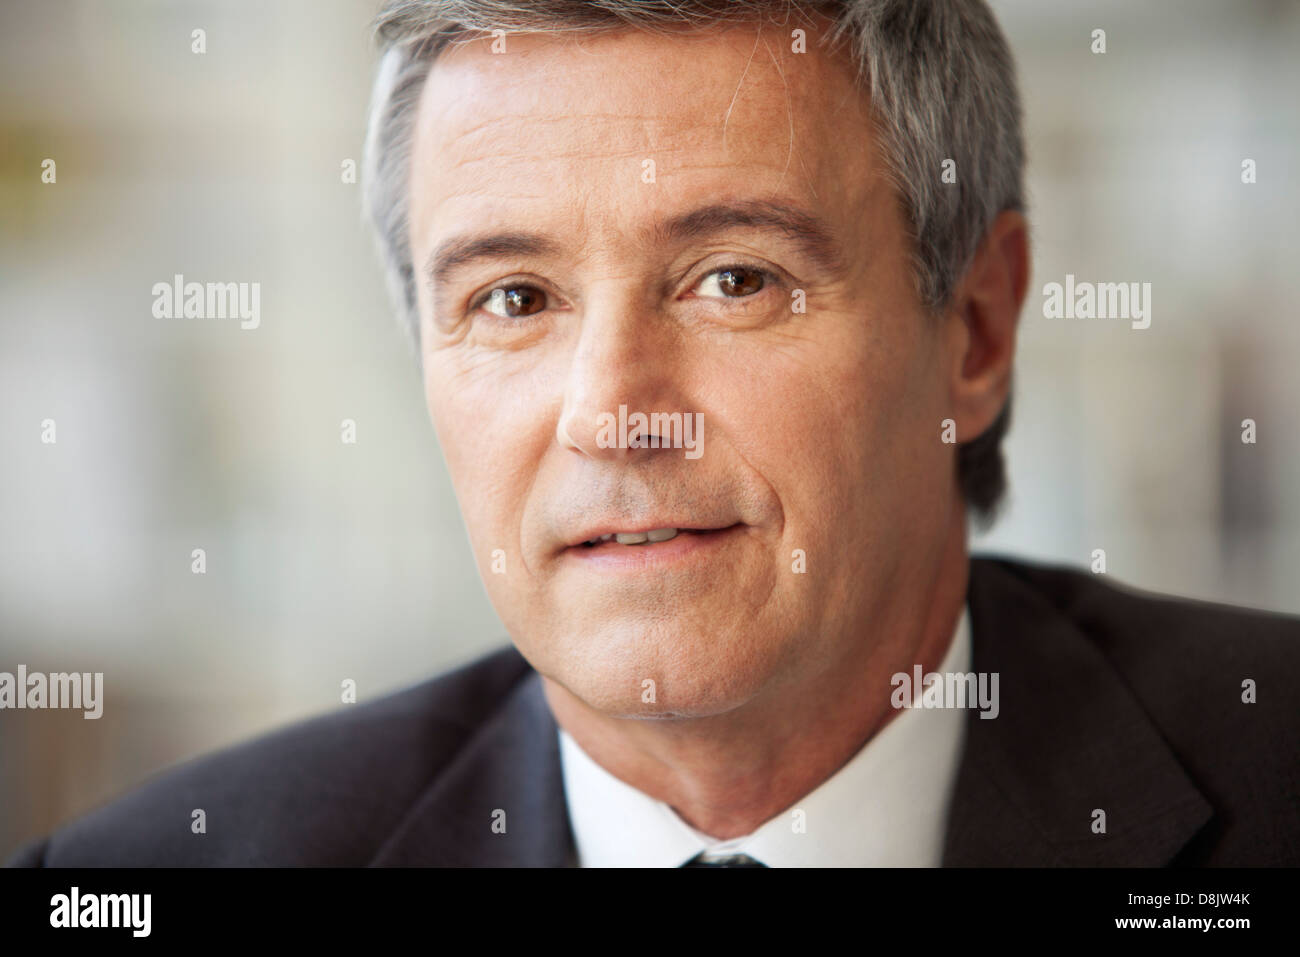 Mature businessman, portrait Stock Photo